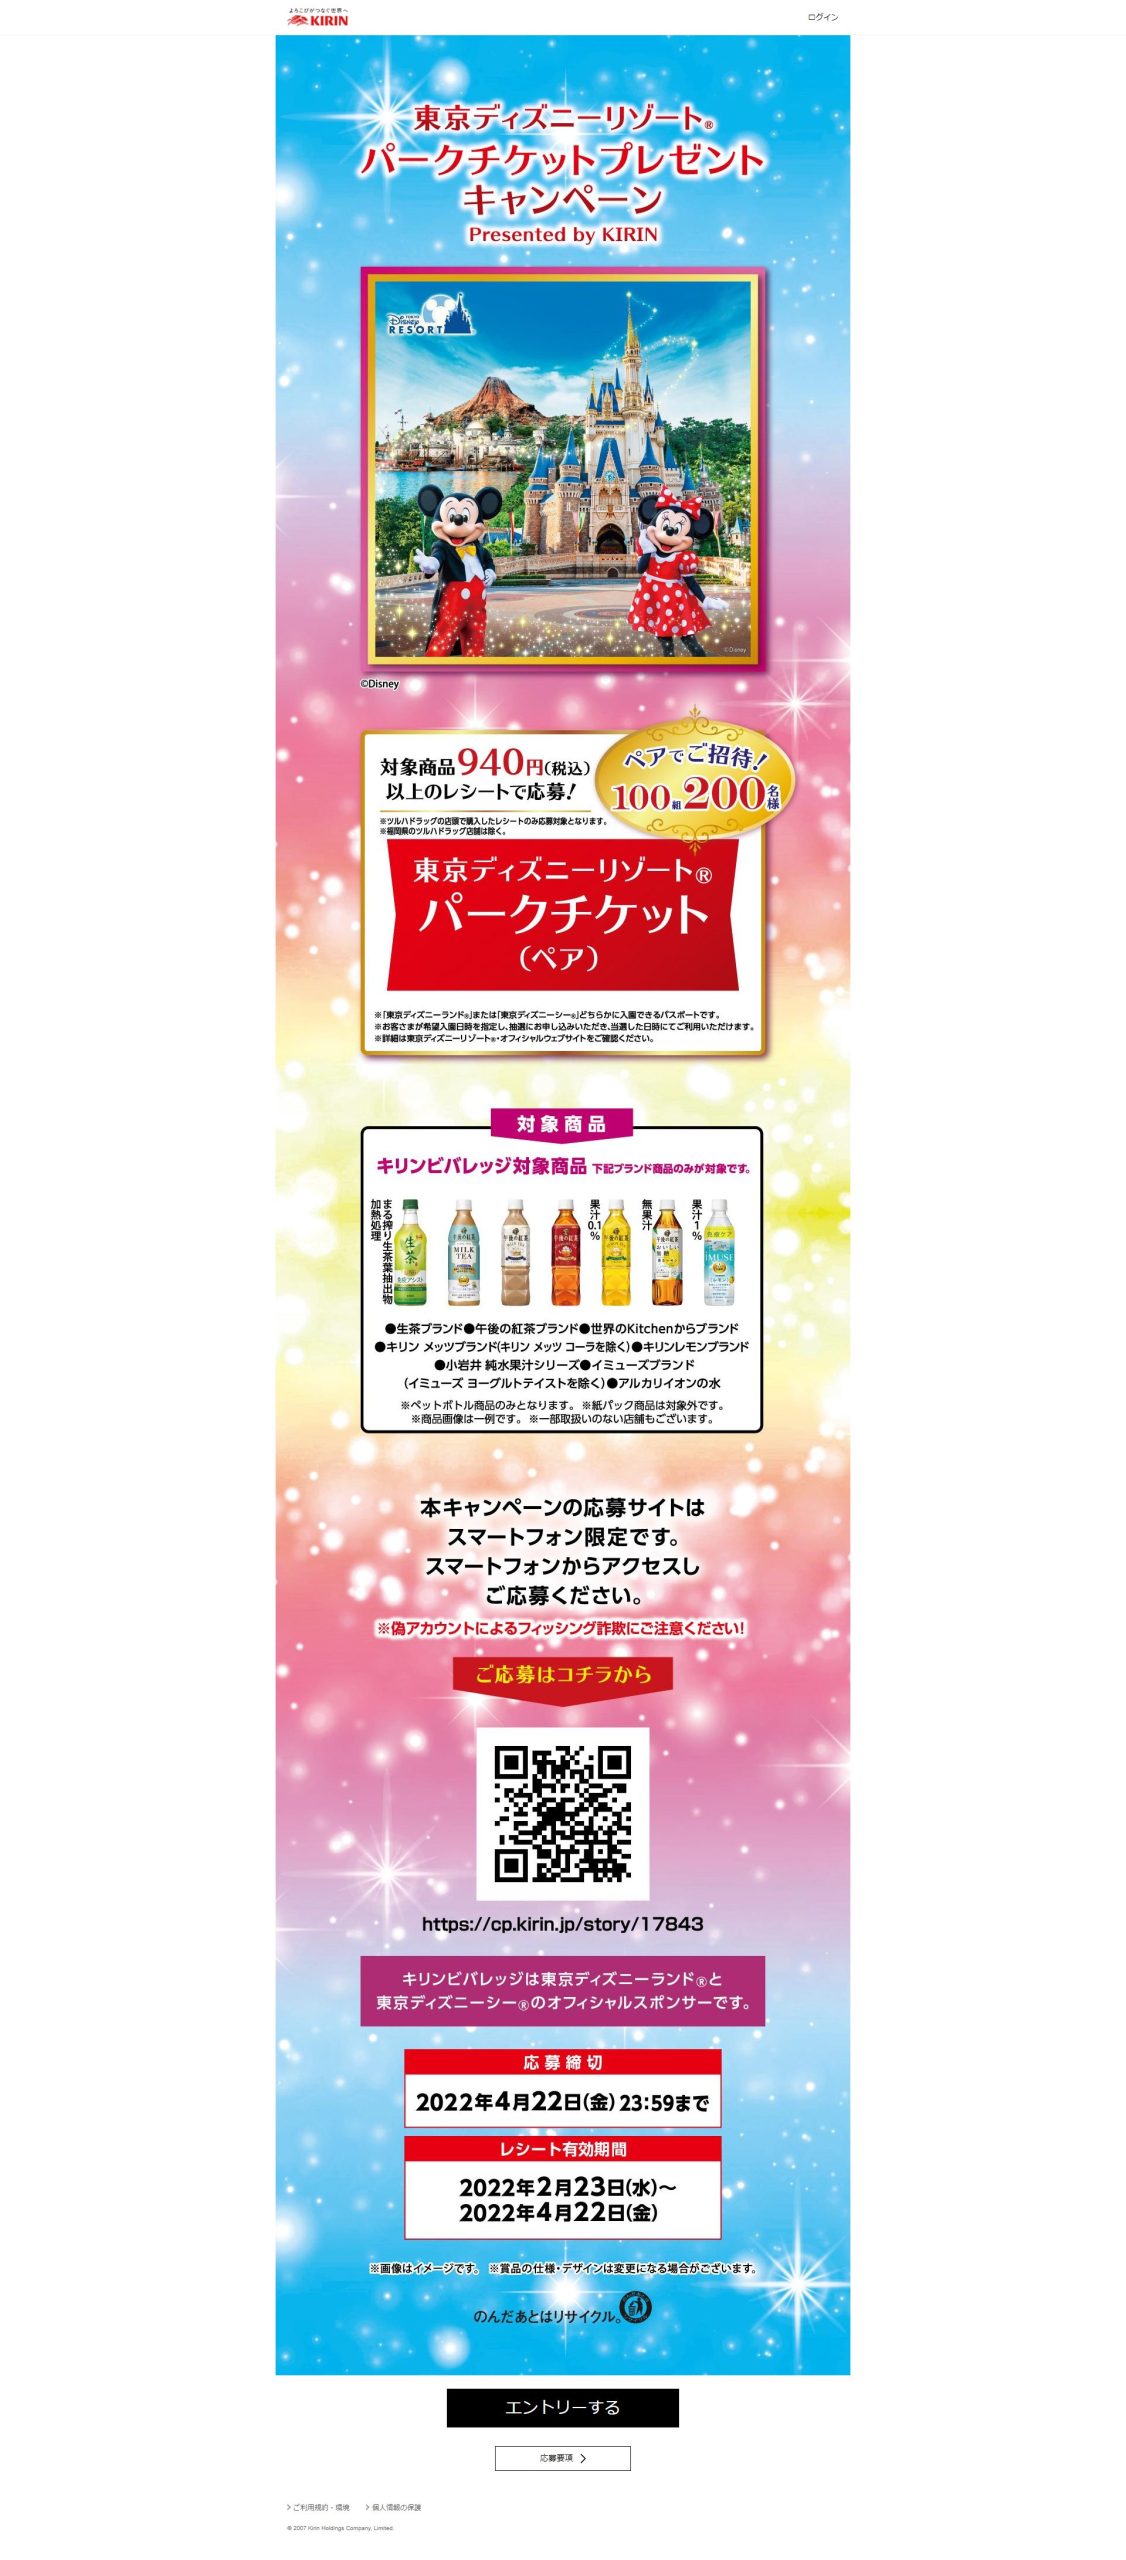 東京ディズニーリゾート パークチケットプレゼントキャンペーン Presented By Kirin キャンなび Webキャンペーンまとめサイト